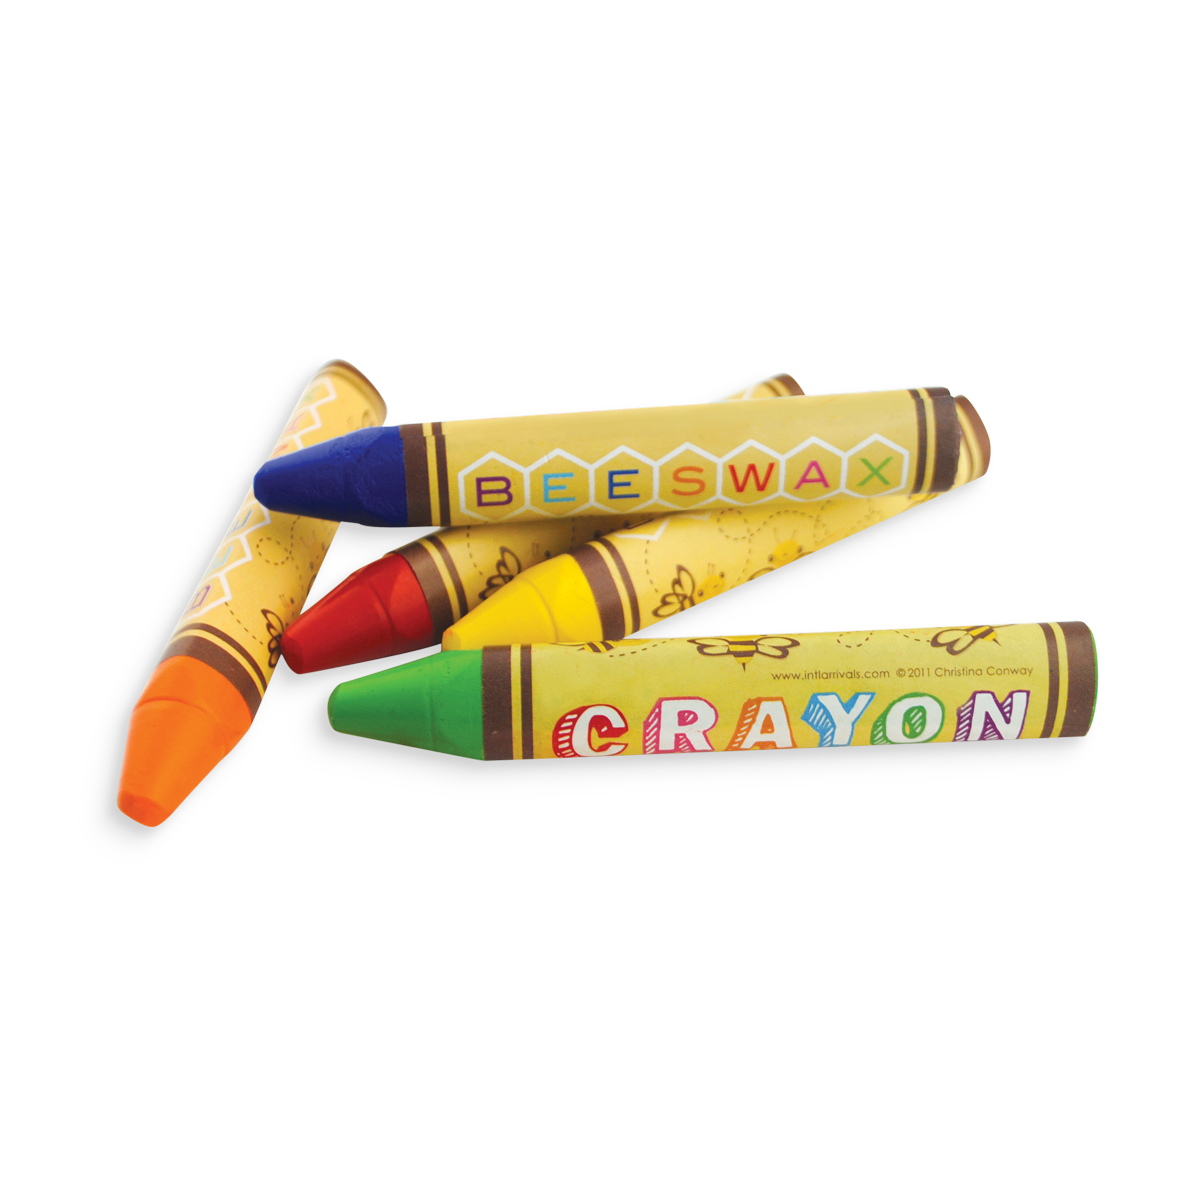 Brilliant Bee Crayons 12Ct